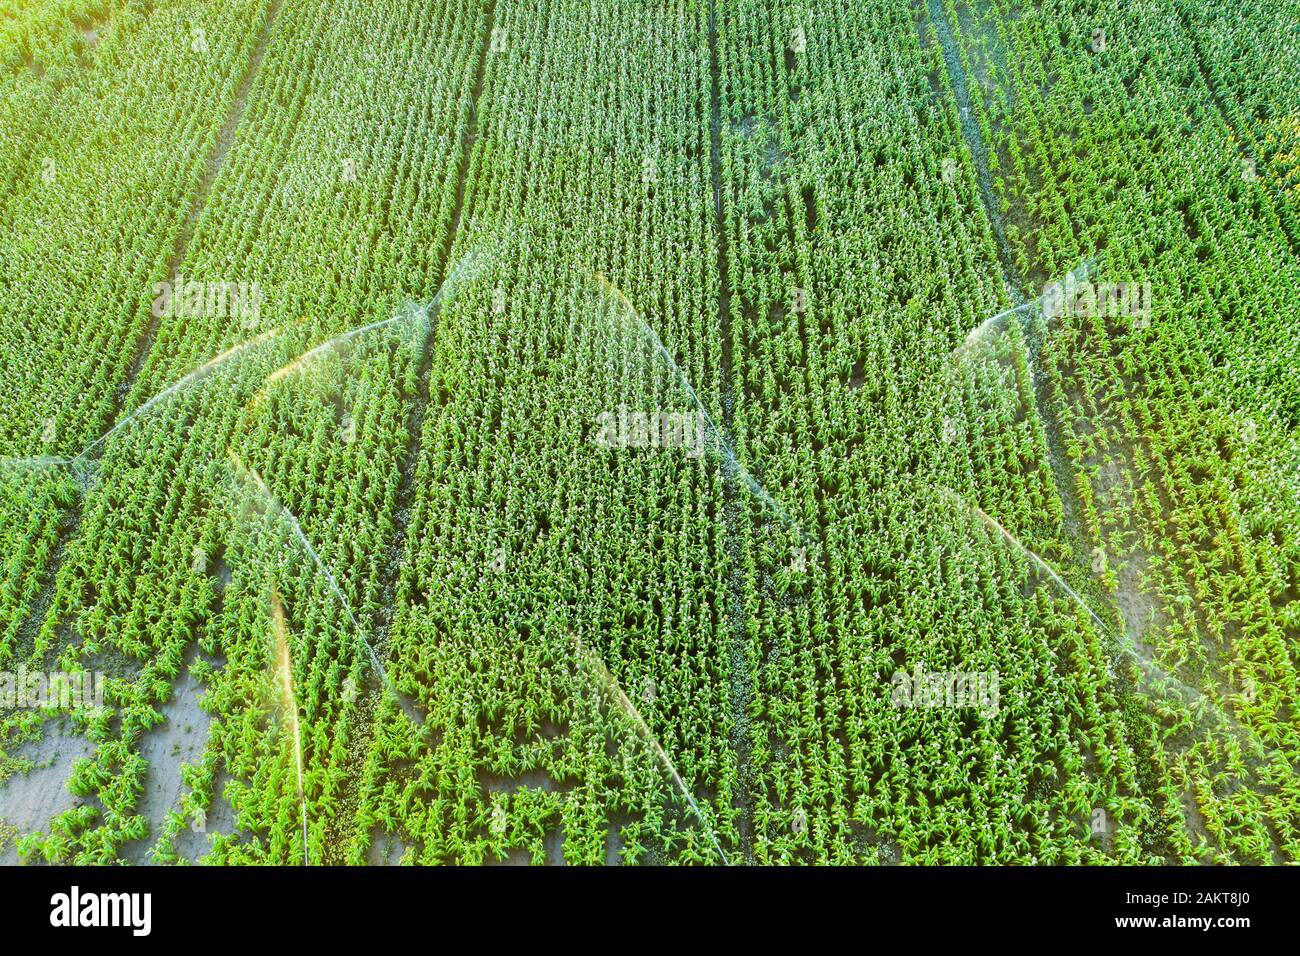 Tierras de cultivo con riego. Vista aérea. Foto de stock